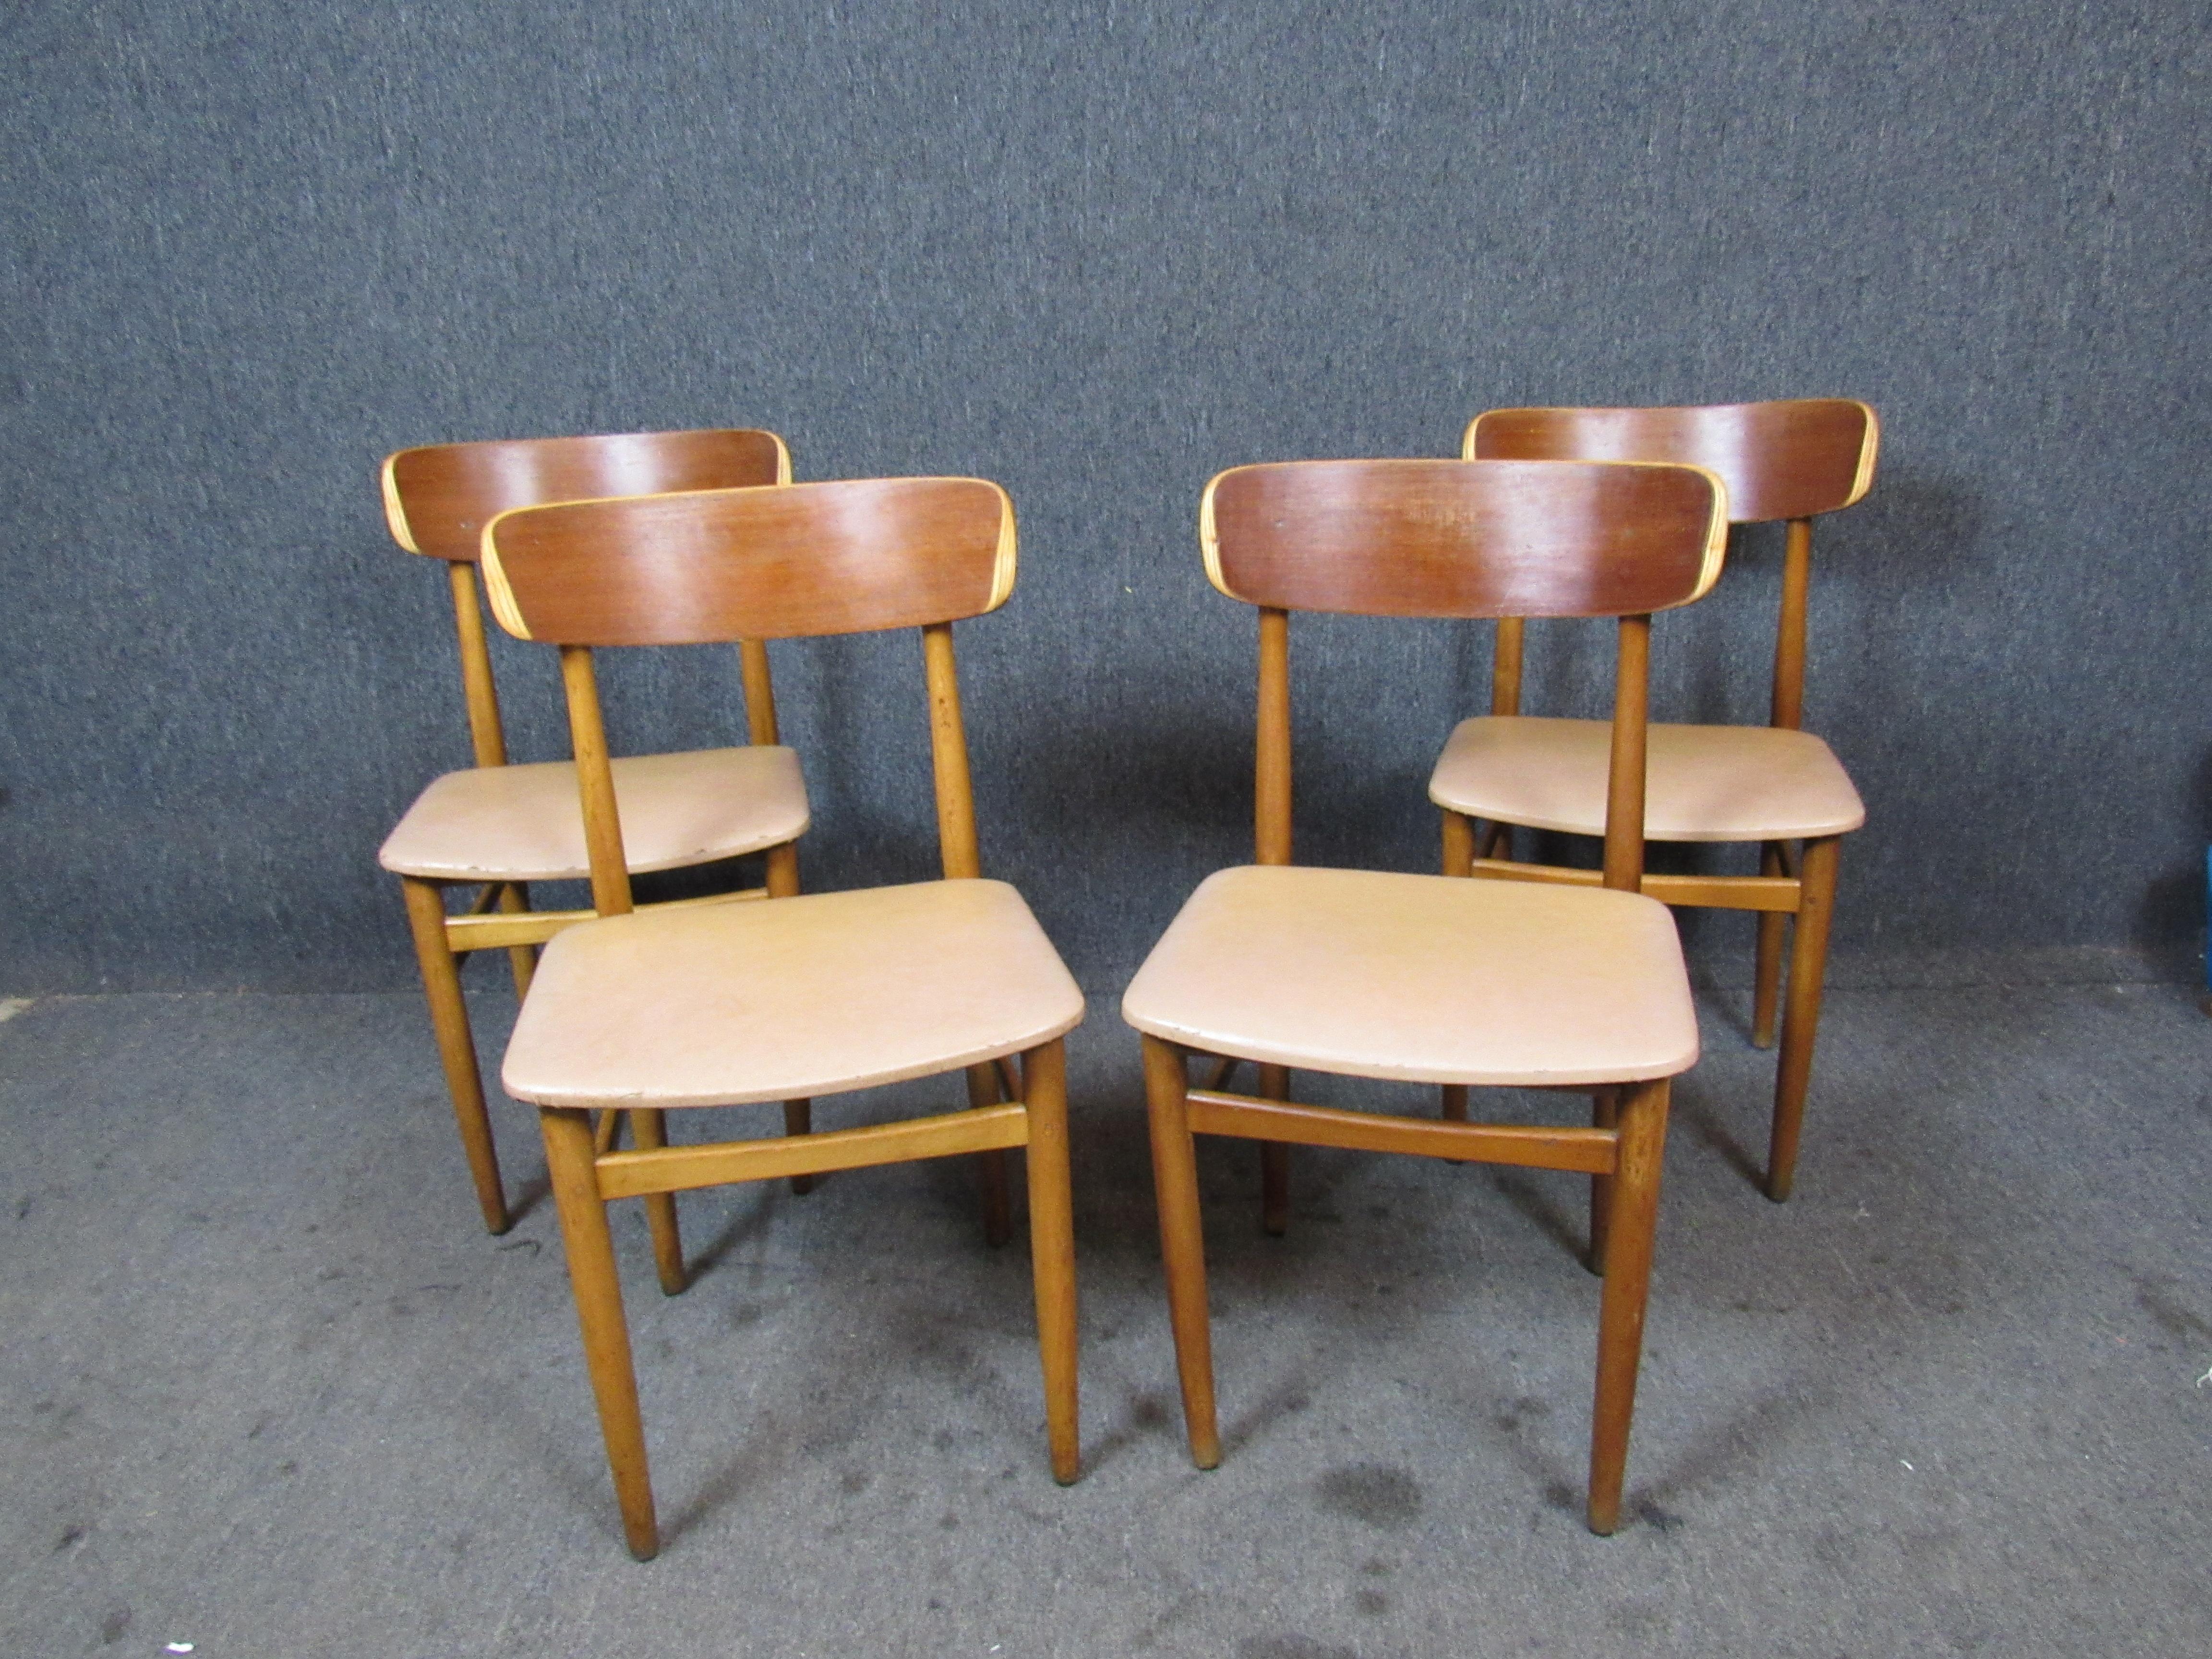 Fantastique ensemble de chaises de salle à manger danoises vintage compactes, avec des dossiers en contreplaqué courbé uniques pour une esthétique classique de la modernité du milieu du siècle dernier. Les chaises de salle à manger légères sont